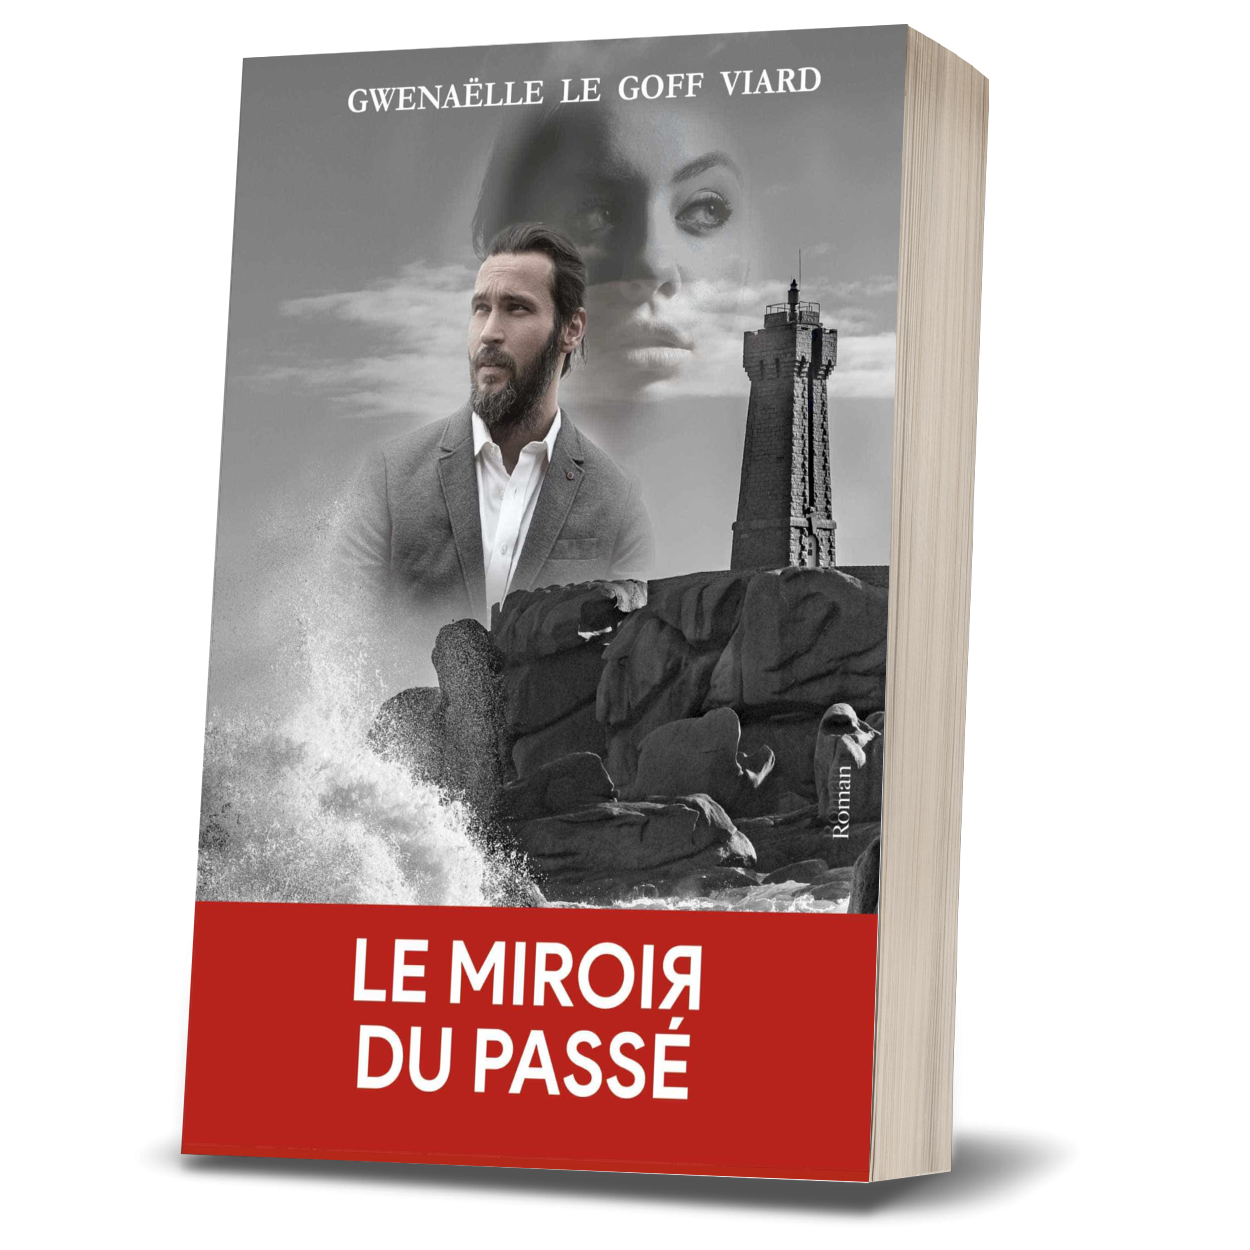 Le Miroir du passé, suspense de Gwenaëlle Le Goff Viard, romancière